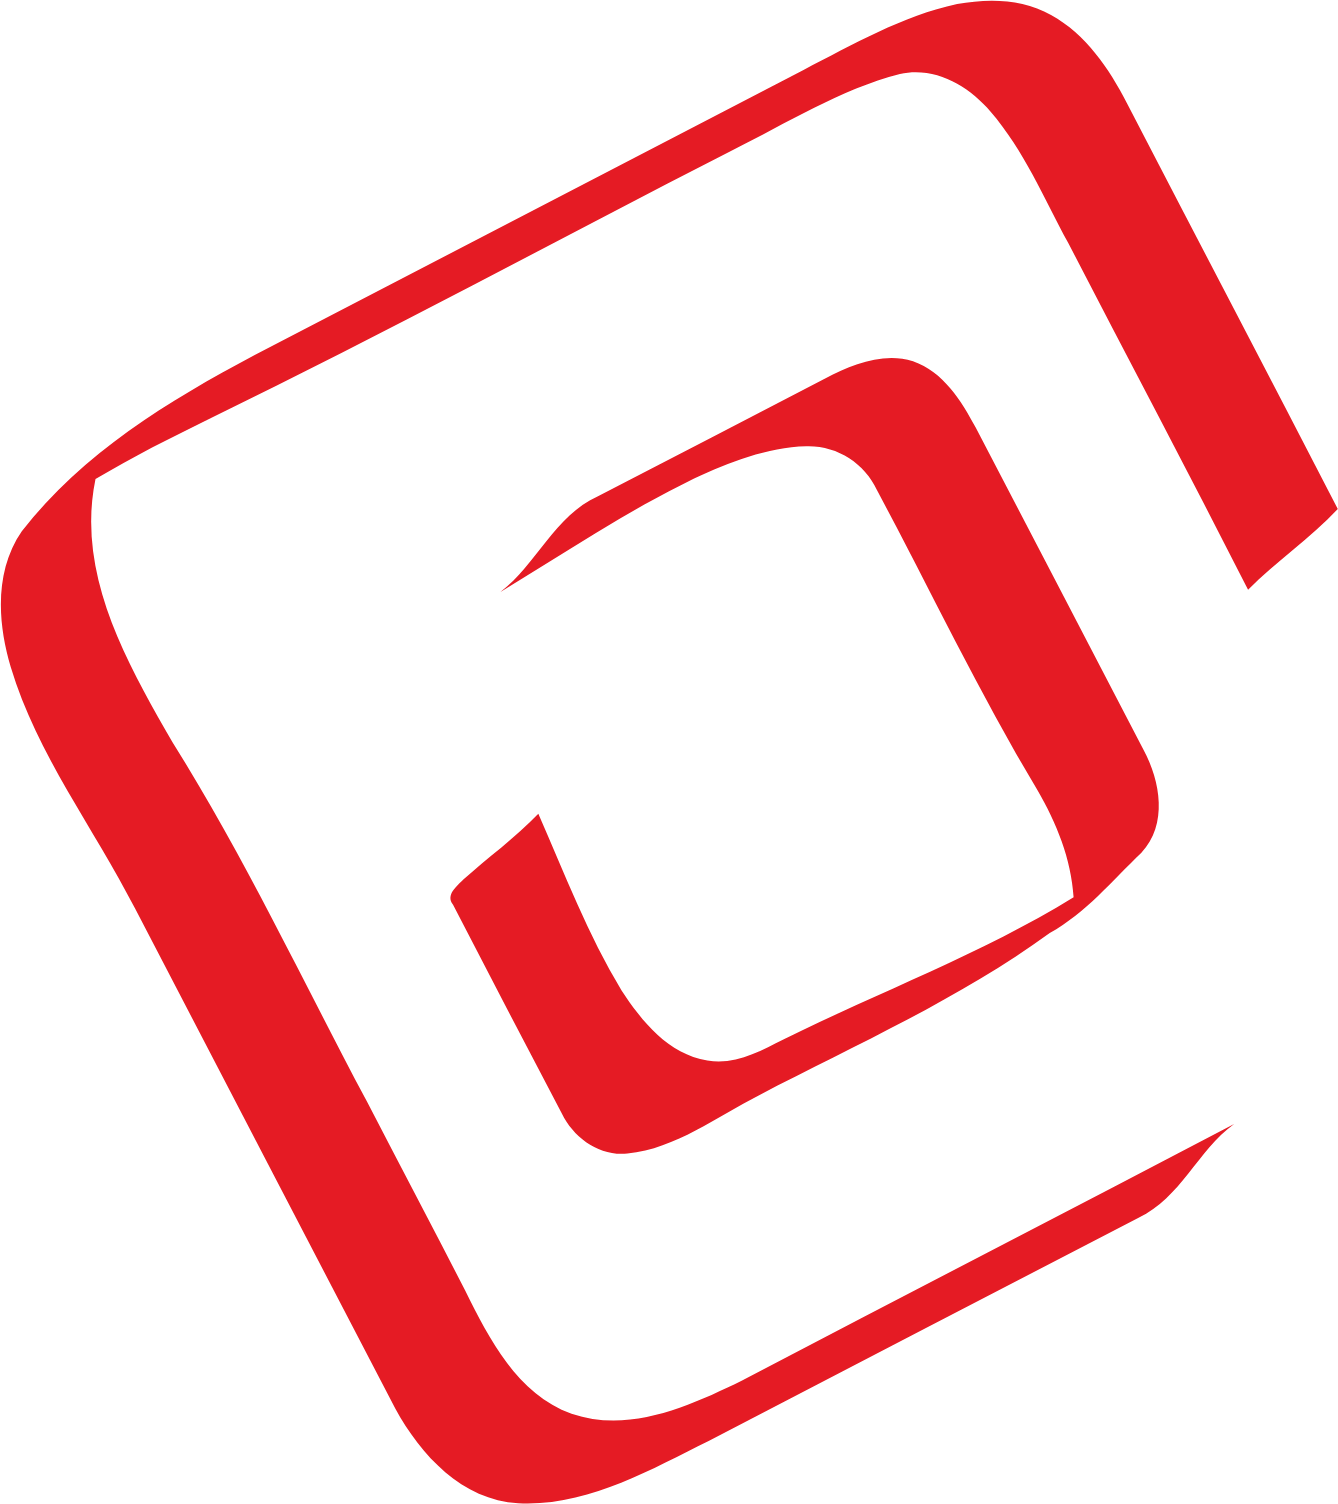 Mobilicom logo (transparent PNG)